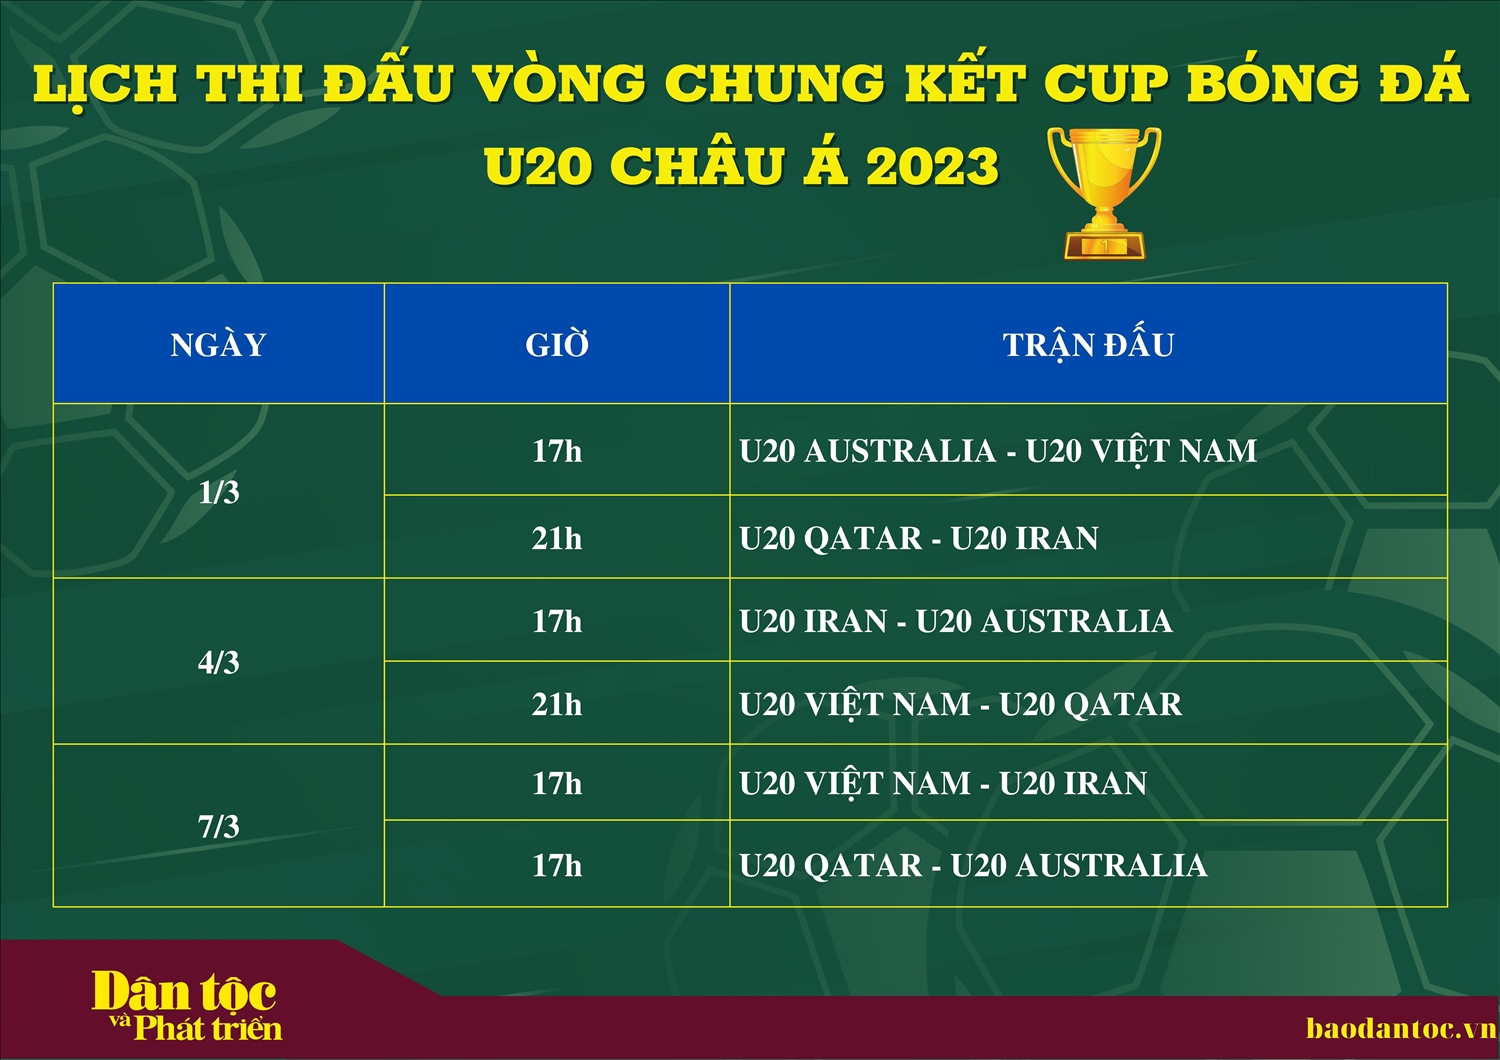 Cập nhật lịch thi đấu đội tuyển U20 Việt Nam tại vòng chung kết U20 châu Á 2023